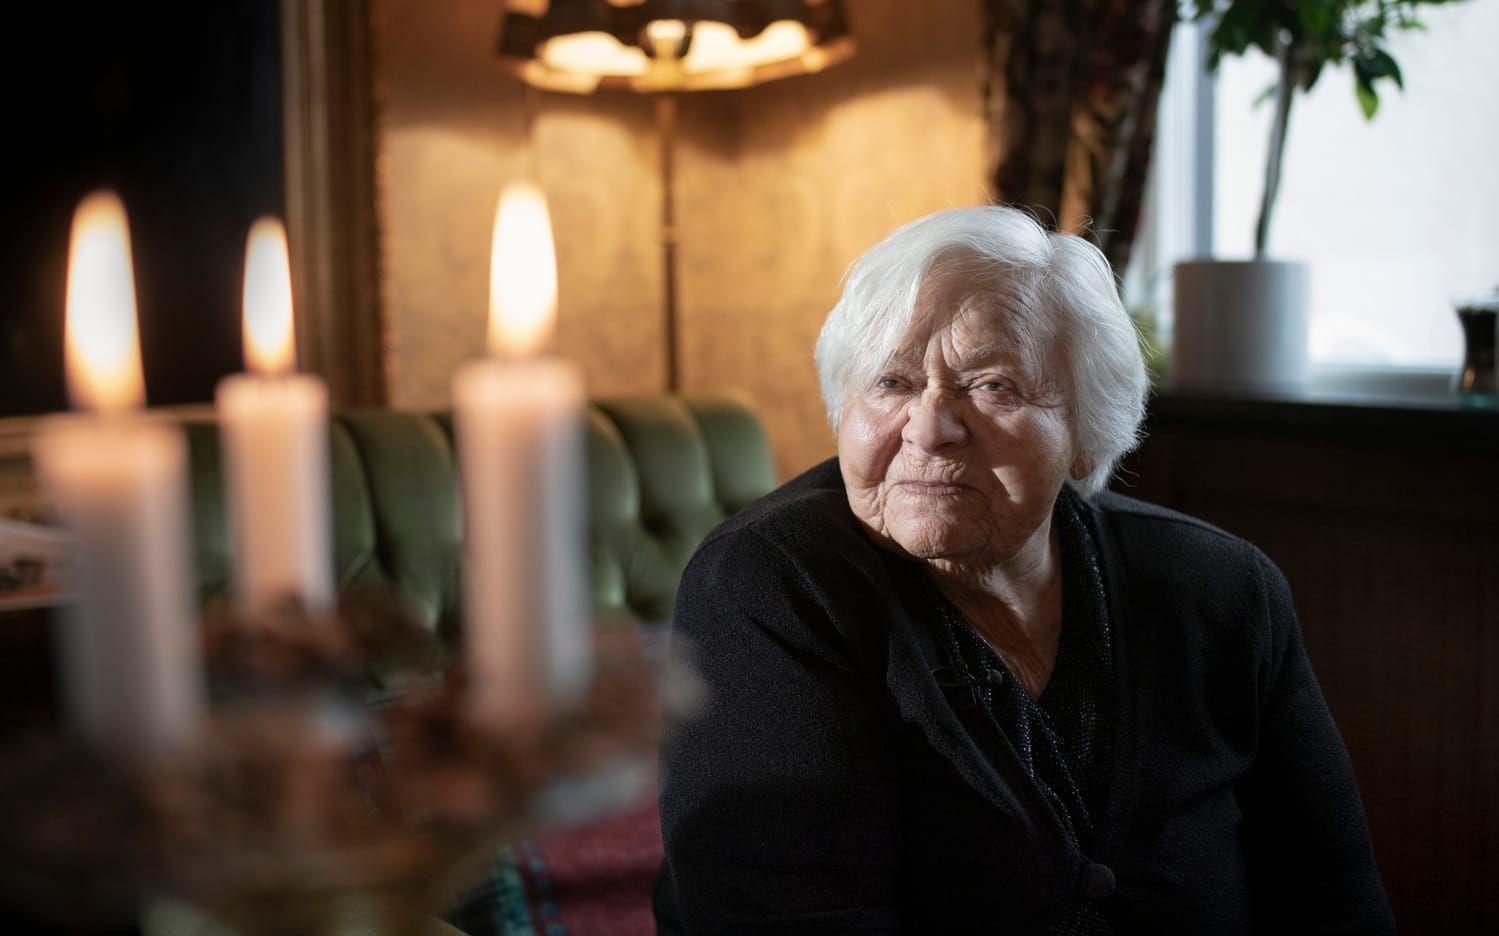 Ester kom till Sverige 1945 med sin storasyster. Det var också här som hon träffade Leon.